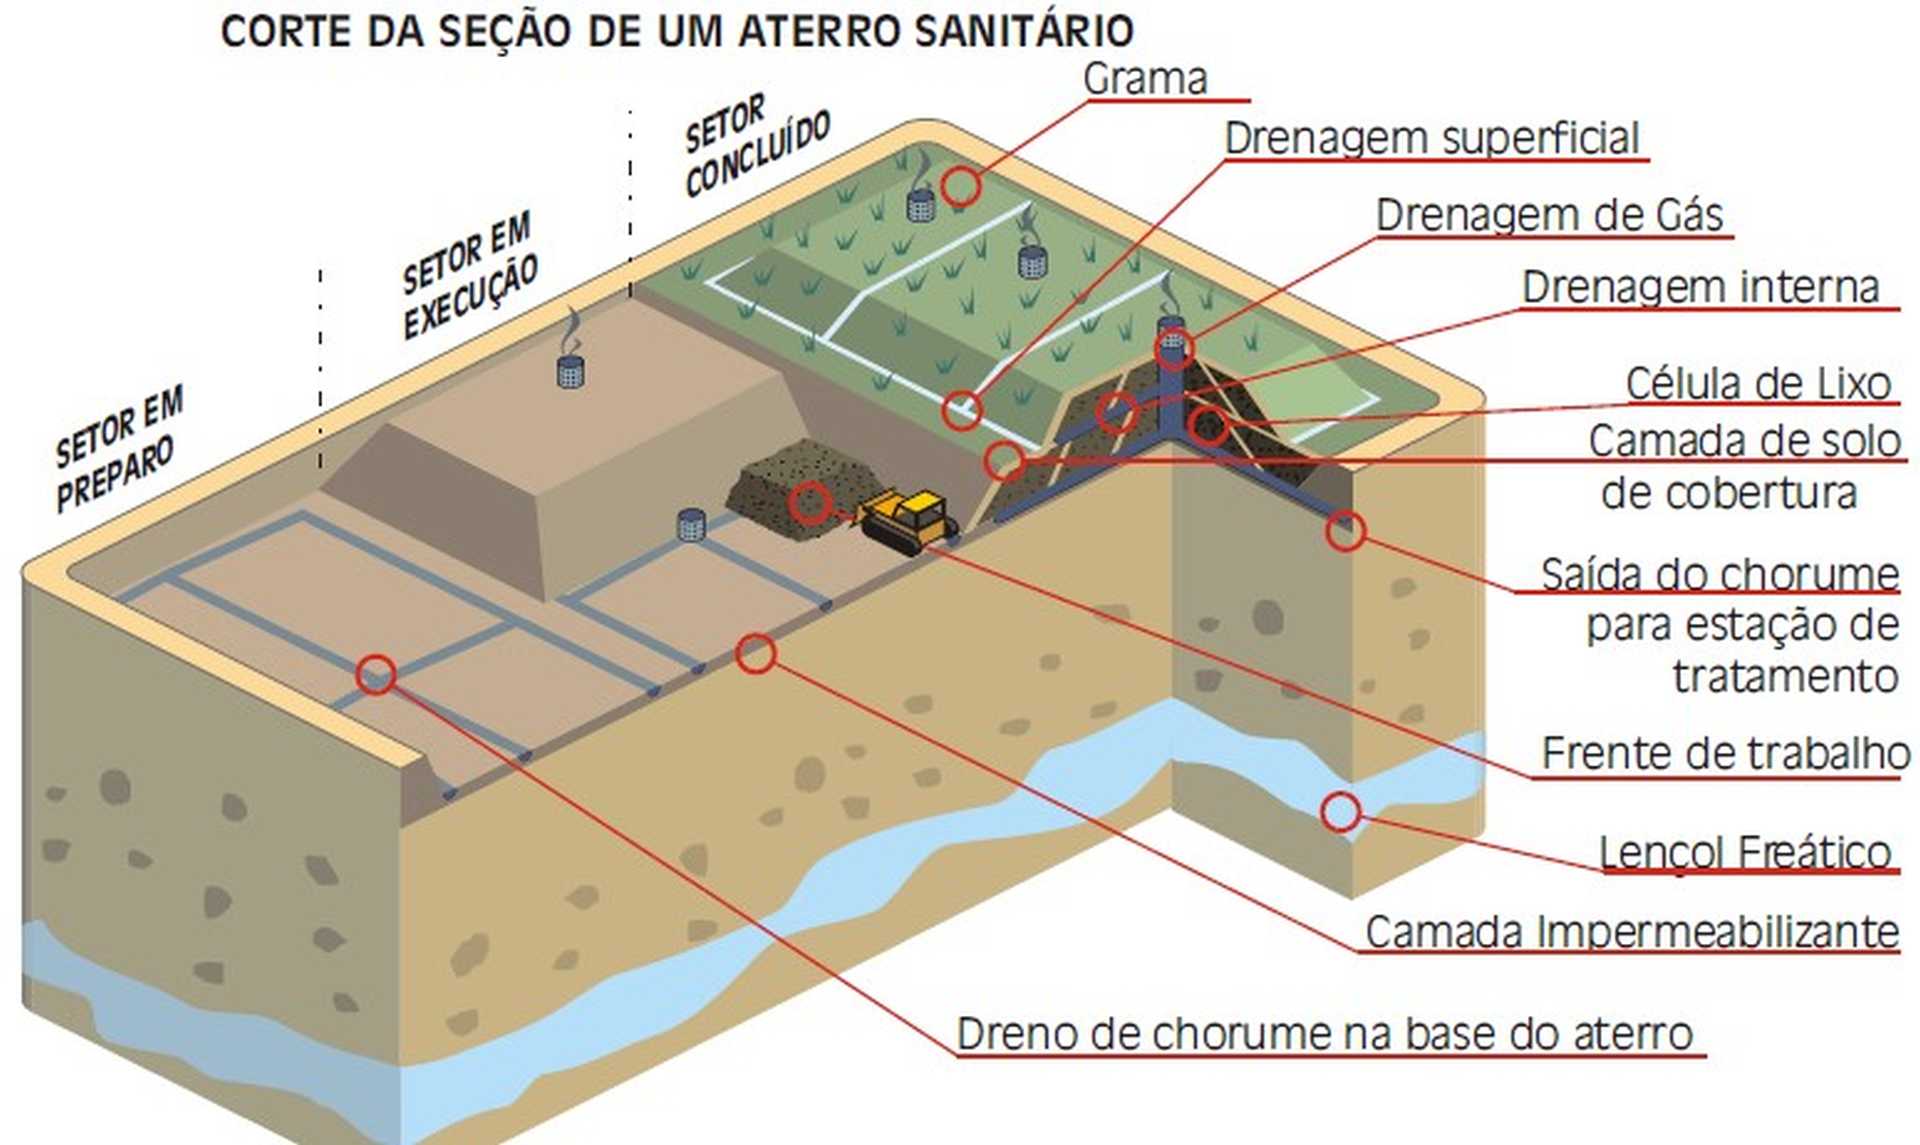 infográfico com o corte da seção de um aterro sanitário